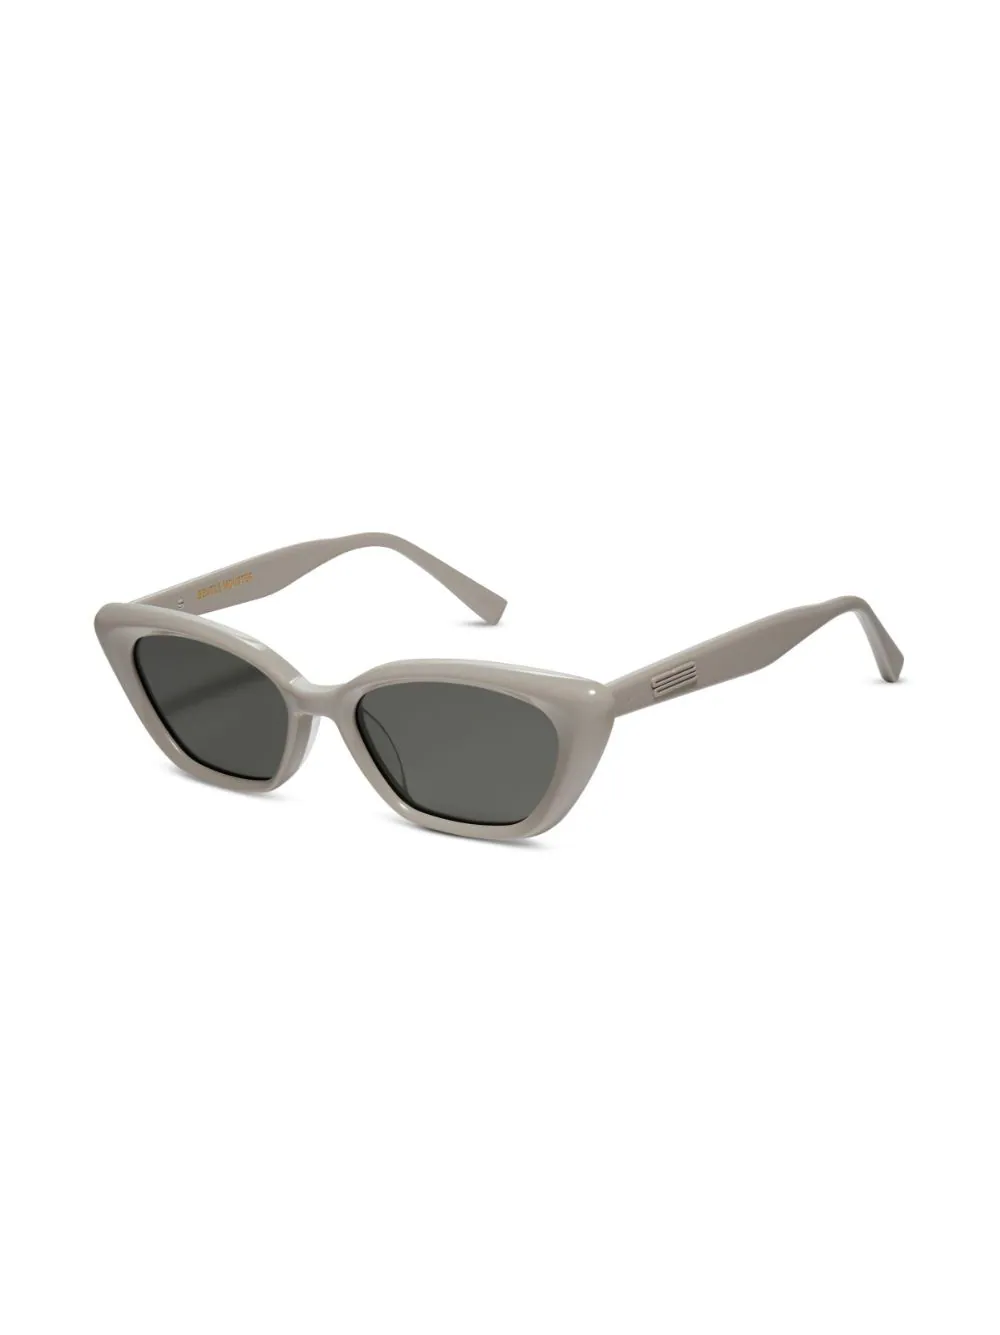 GENTLE MONSTER TERRA COTTA G10 Sunglasses